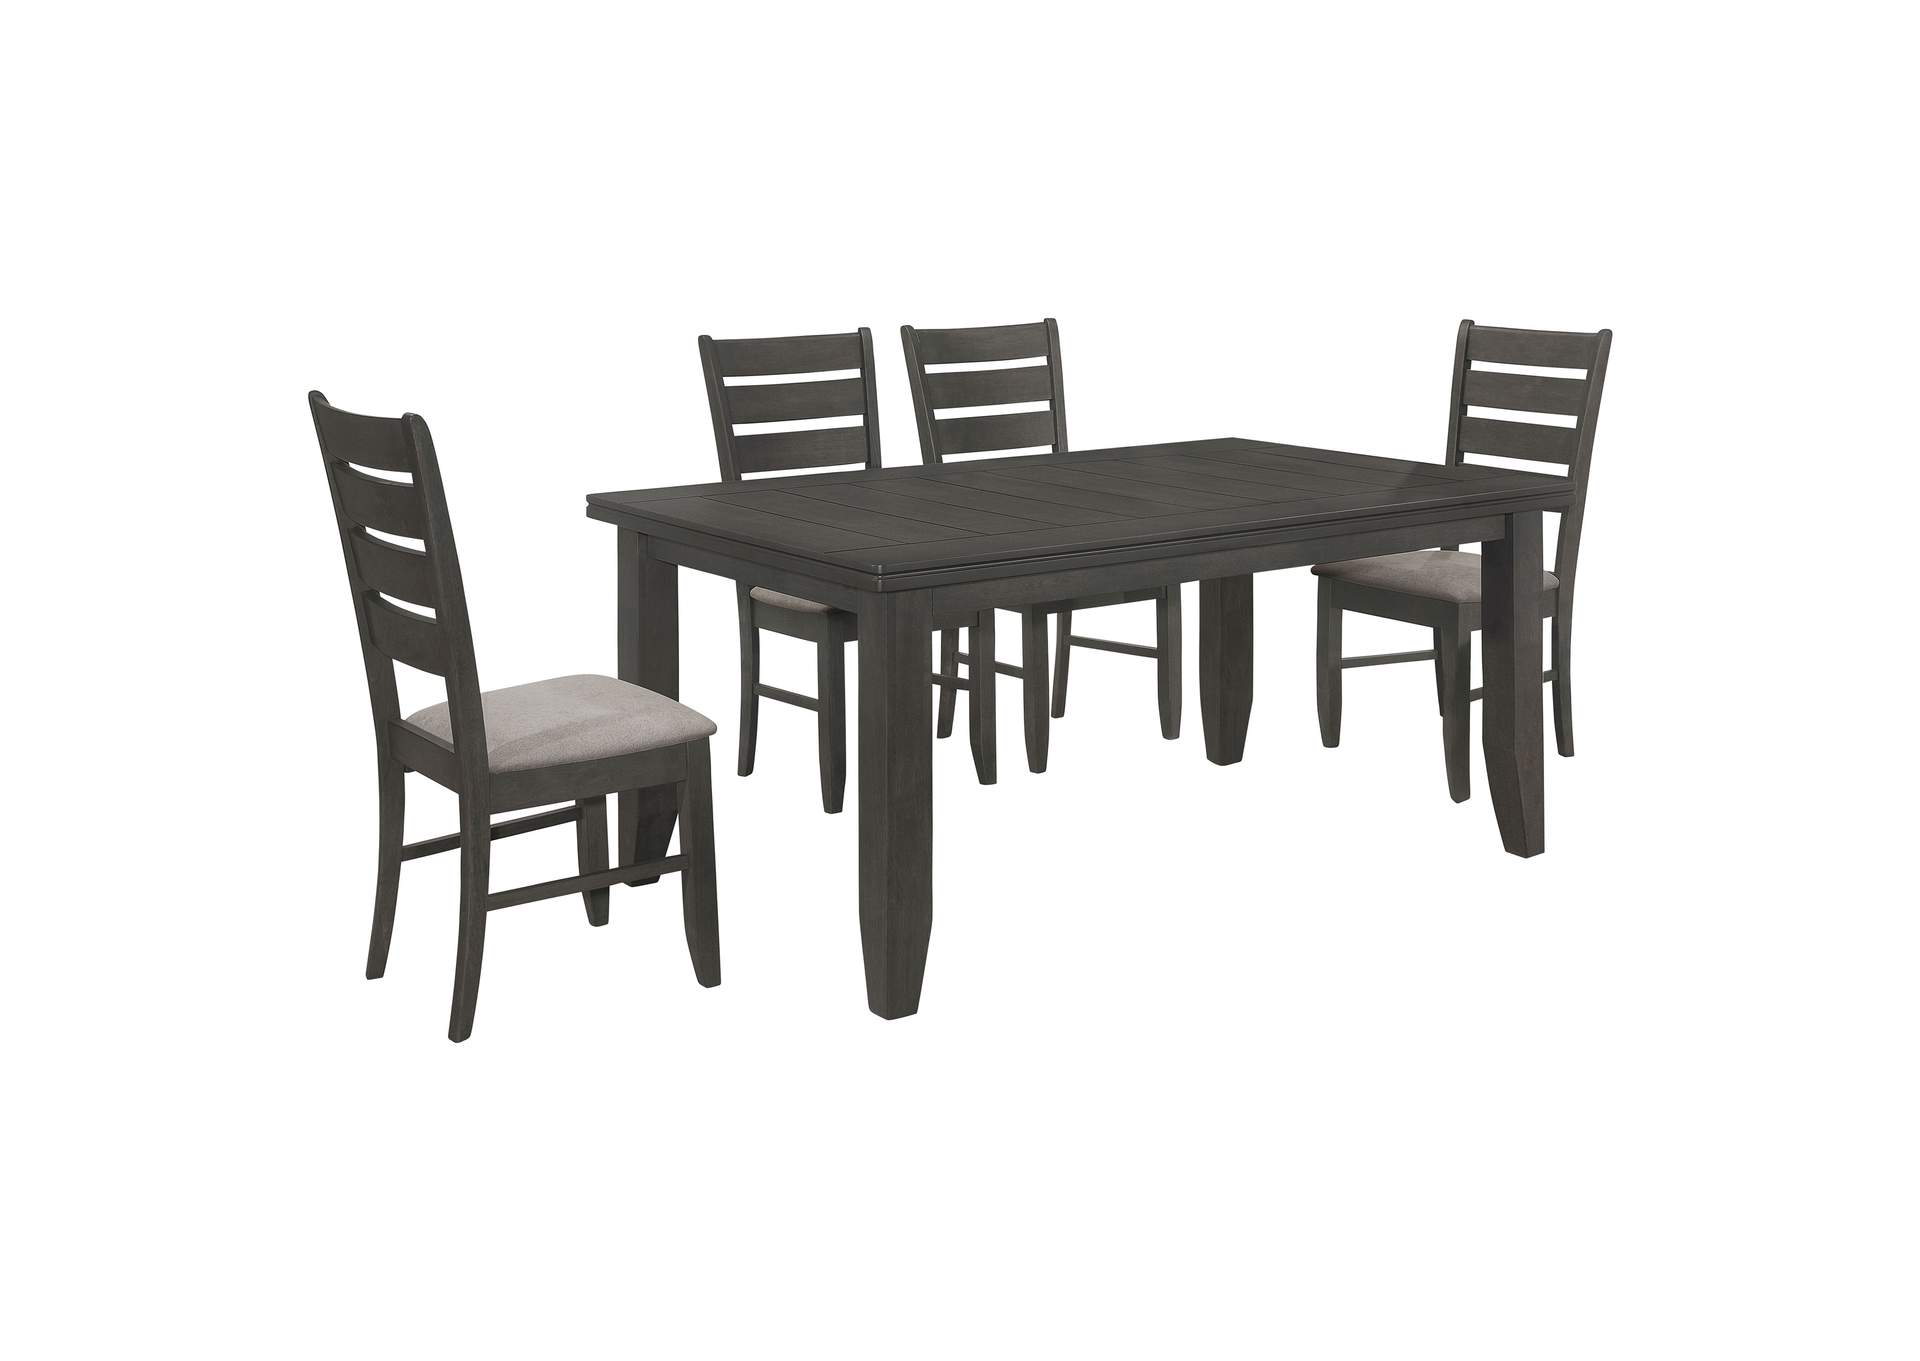 Dalila 5-piece Rectangular Dining Set Grey and Dark Grey,Coaster Furniture